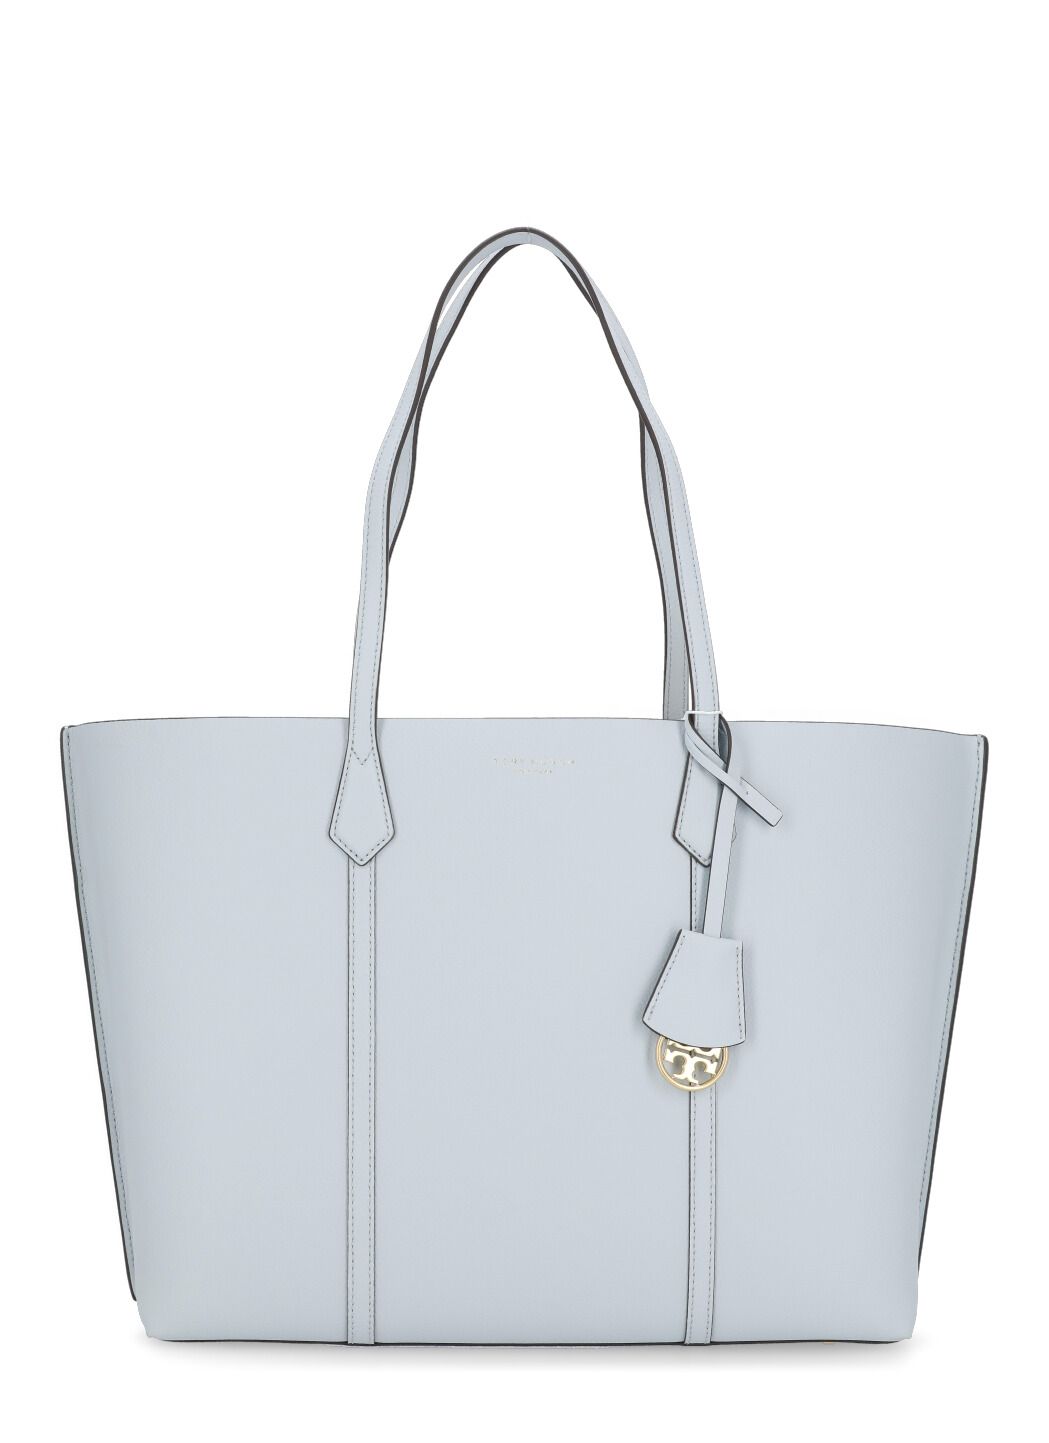 Bucket bags Tory Burch - Miller bucket bag in Light Umber color